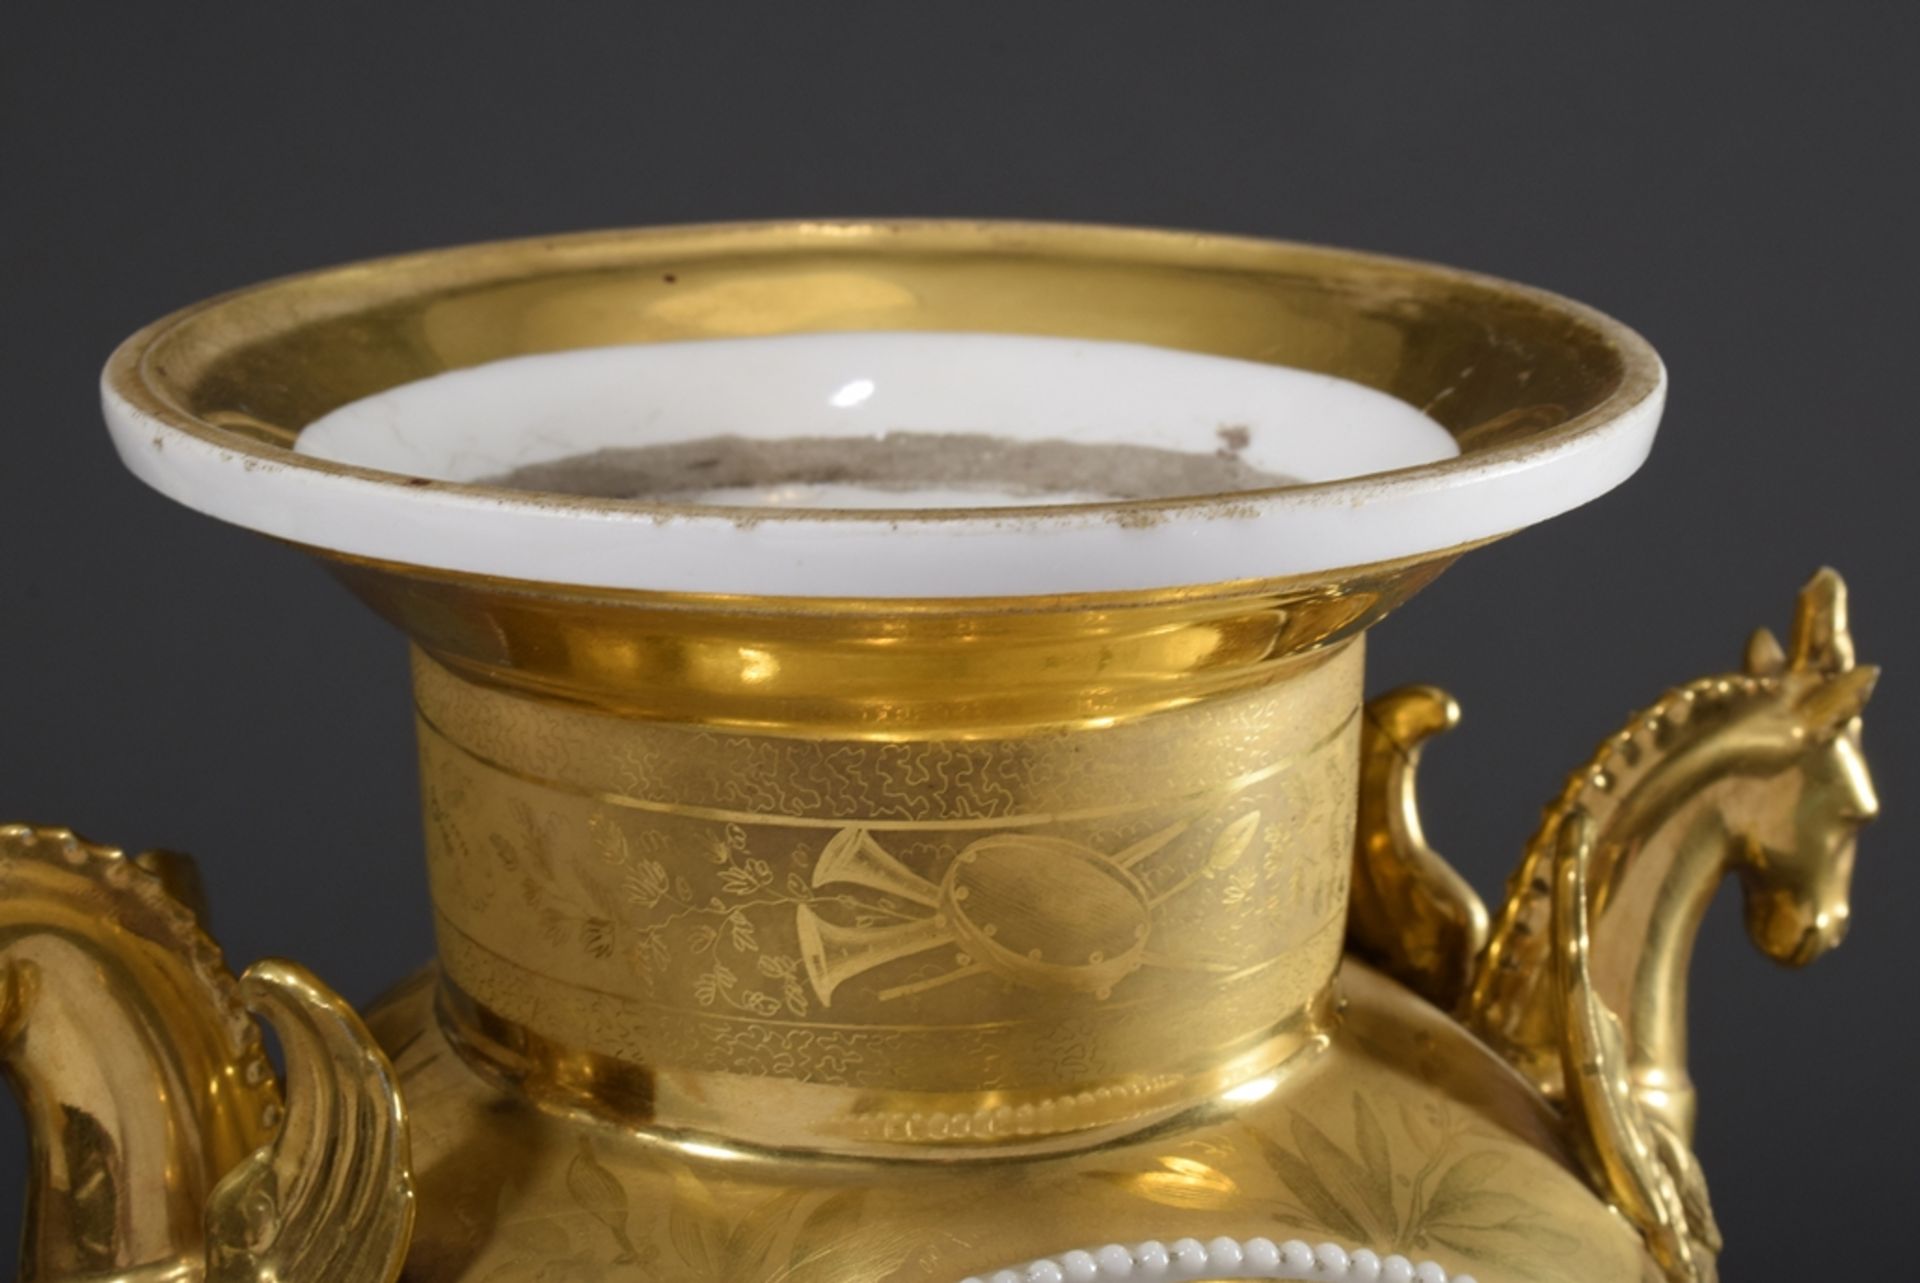 Empire Porzellan Vasenuhr mit figürlichen Handhaben "Geflügeltes Einhorn", reicher, radierter Goldm - Bild 3 aus 10